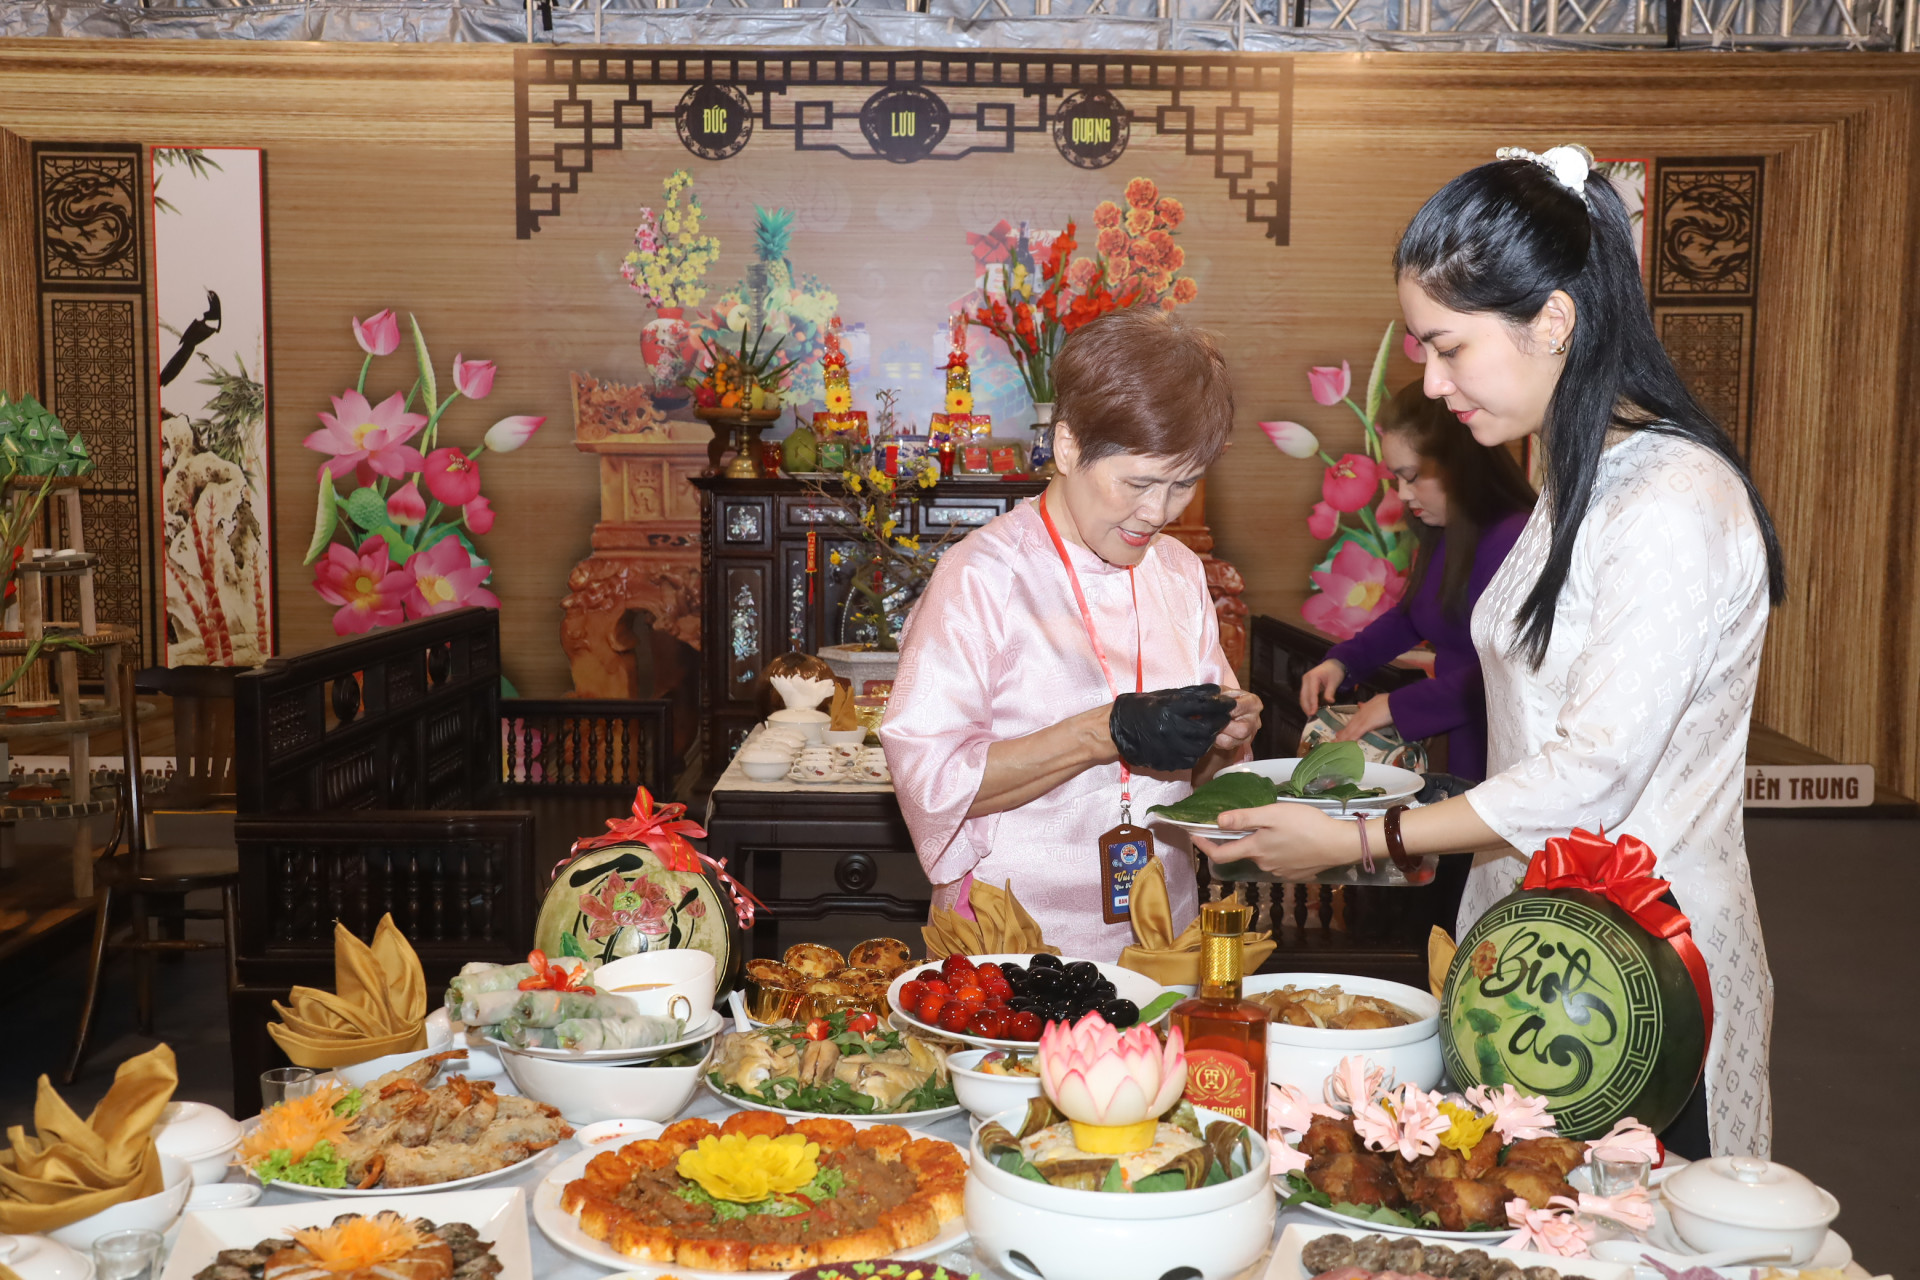 Chuyên gia ẩm thực Hoàng Thị Ánh Tuyết đang bày biện mâm cỗ ngày tết theo phong tục của người dân miền Trung.